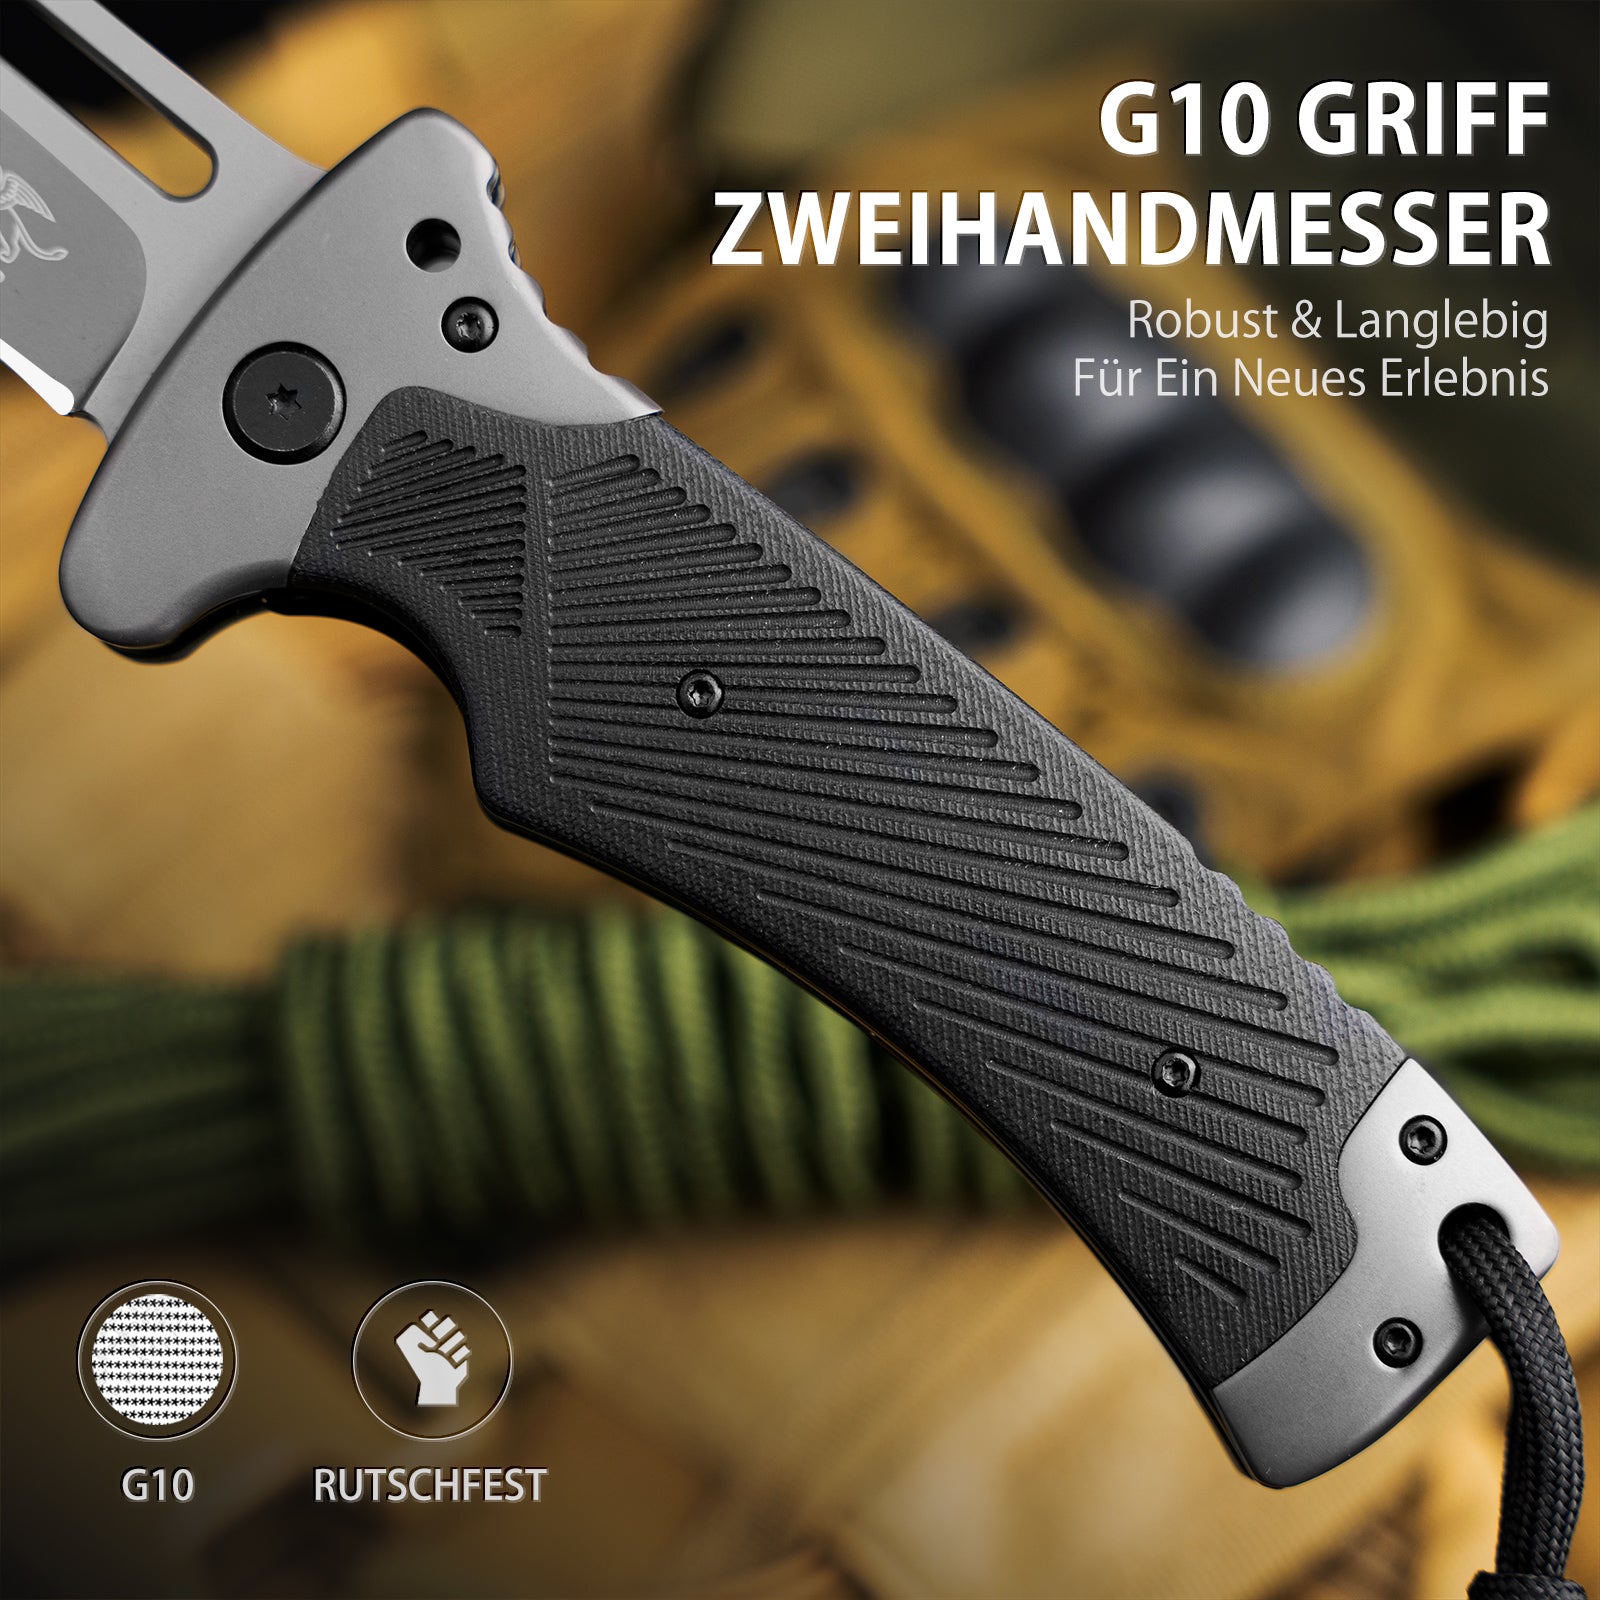 LOTHAR RHINO Zweihand Klappmesser, Mitführen in Deutschland erlaubt, Scharfe Klinge Zweihandmesser, Taschenmesser mit G10 Griff, Zweihandmesser für Camping & Survival